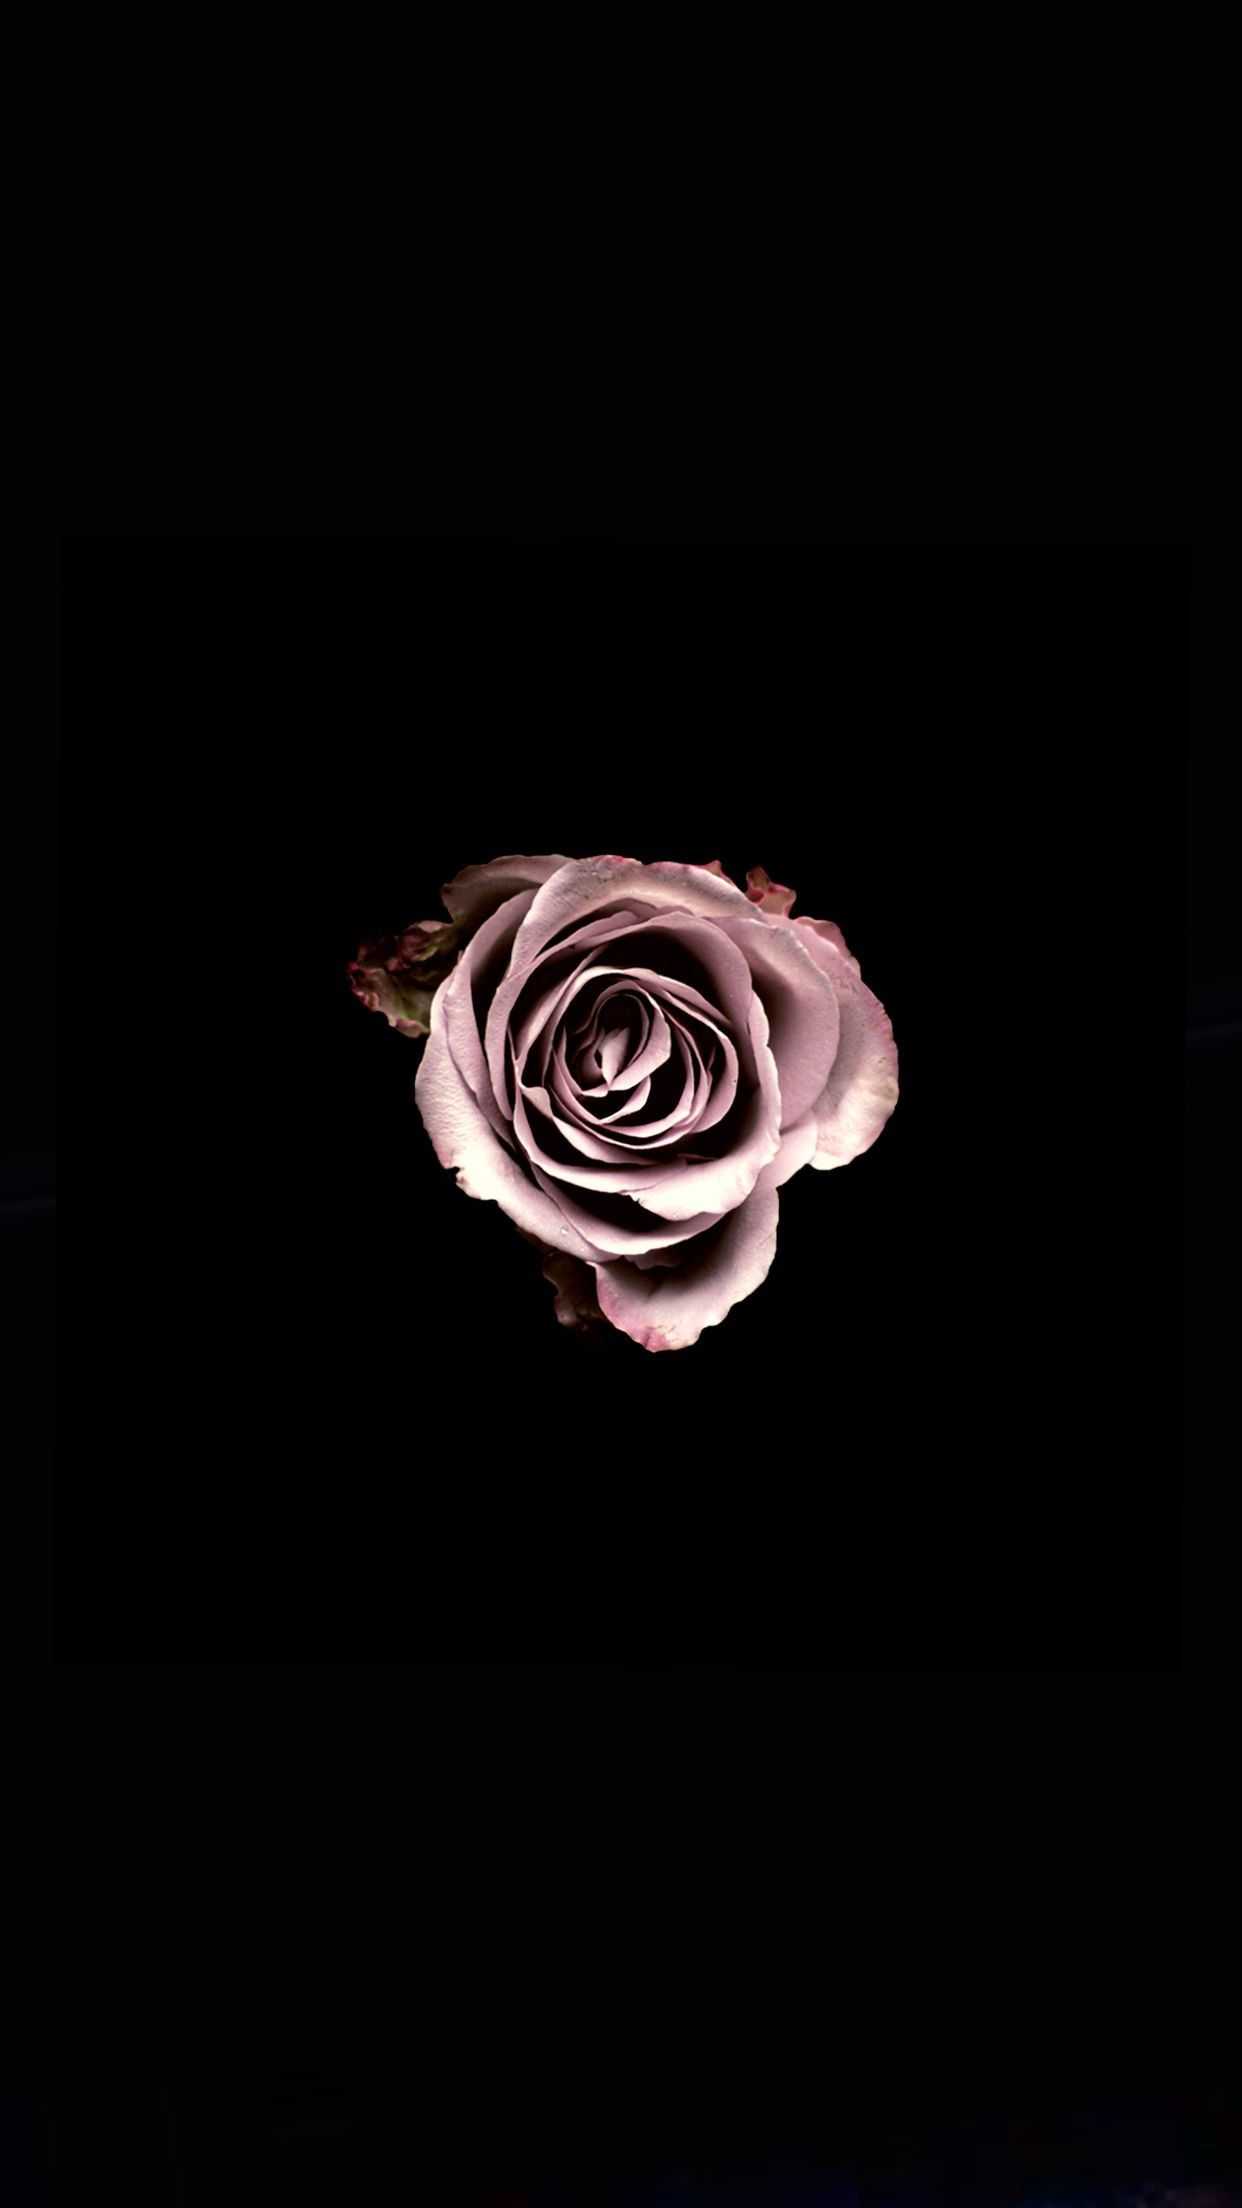 Free download Black Rose Wallpaper [1242x2208] for your Desktop, Mobile ...